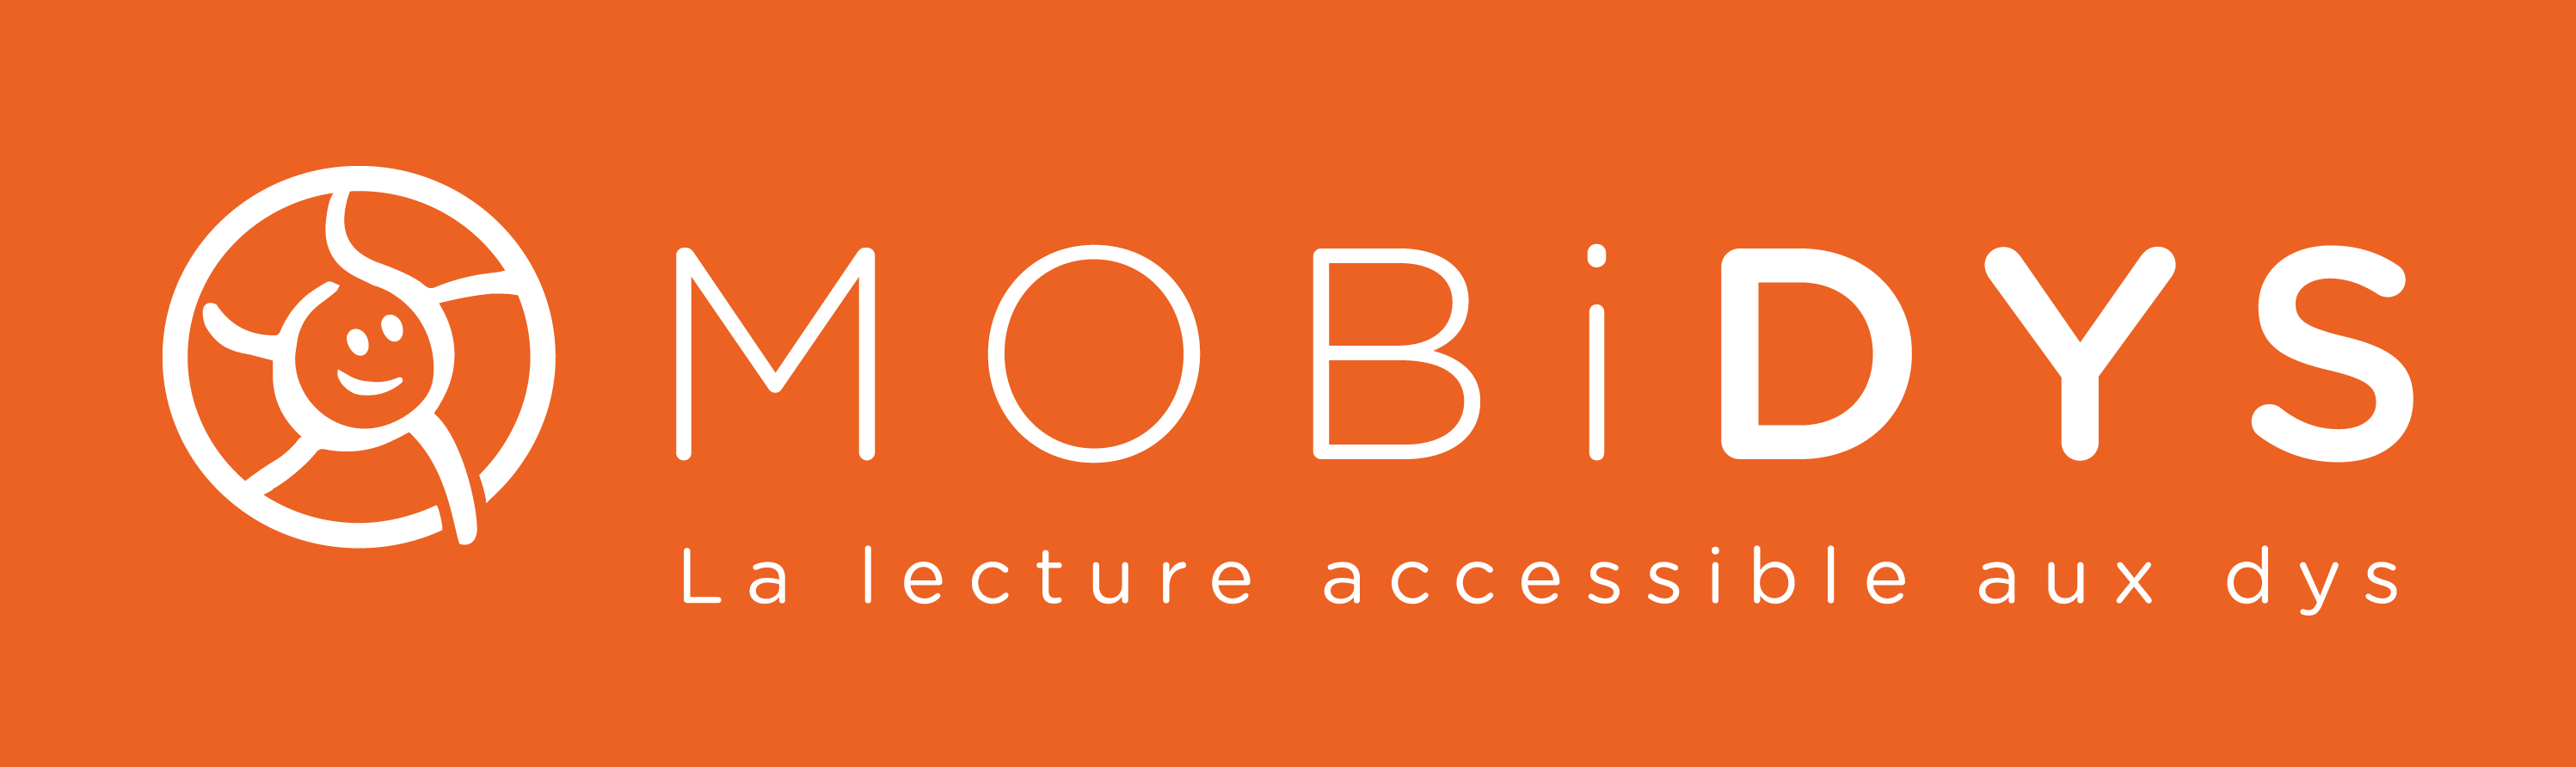 Mobidys logo